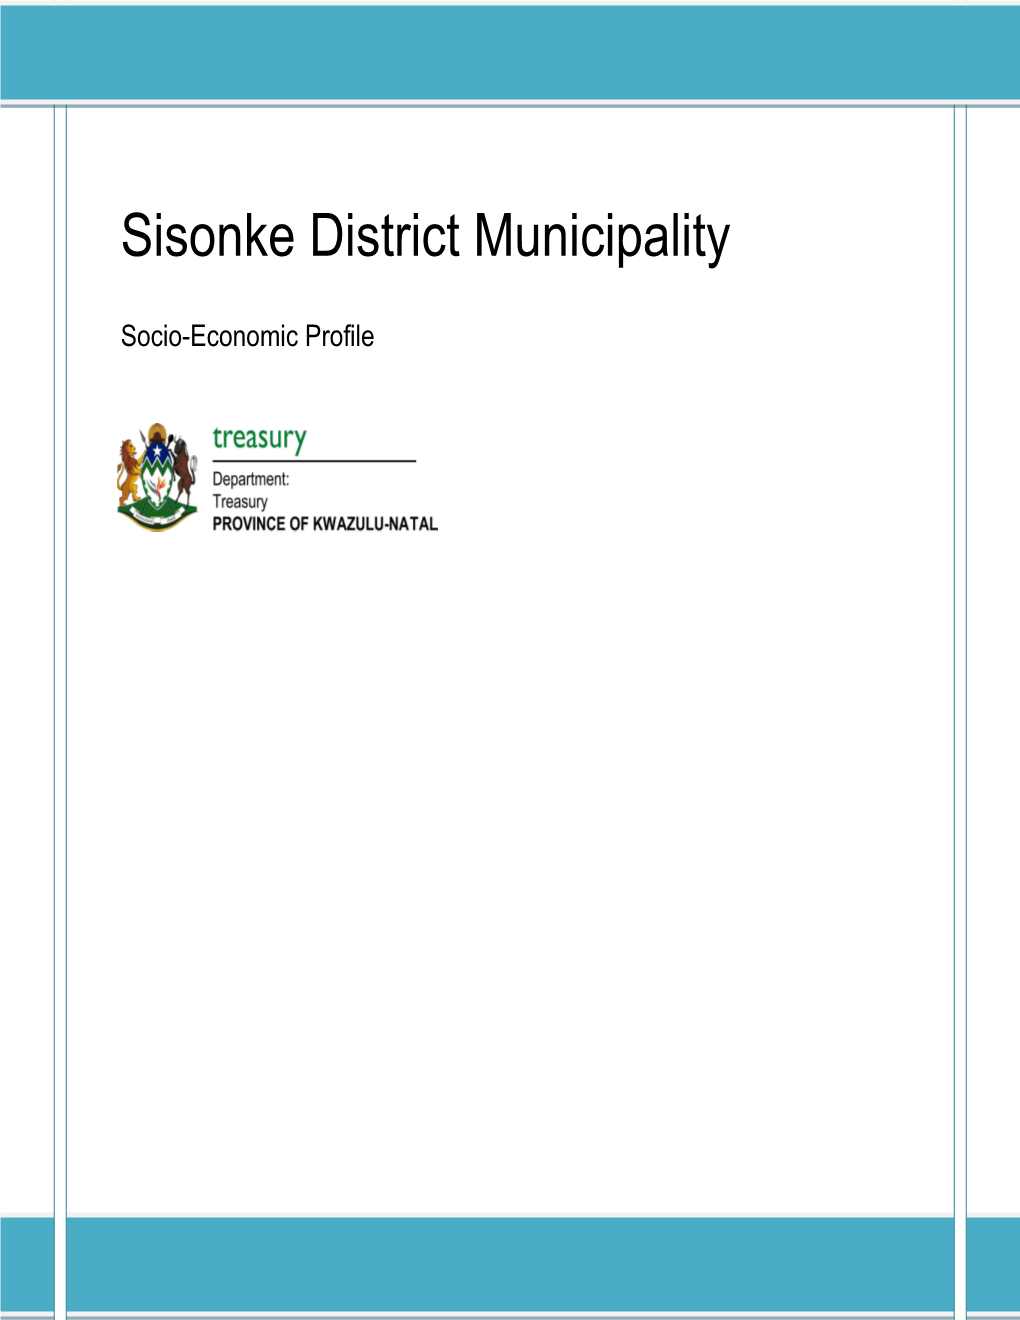 Sisonke District Municipality